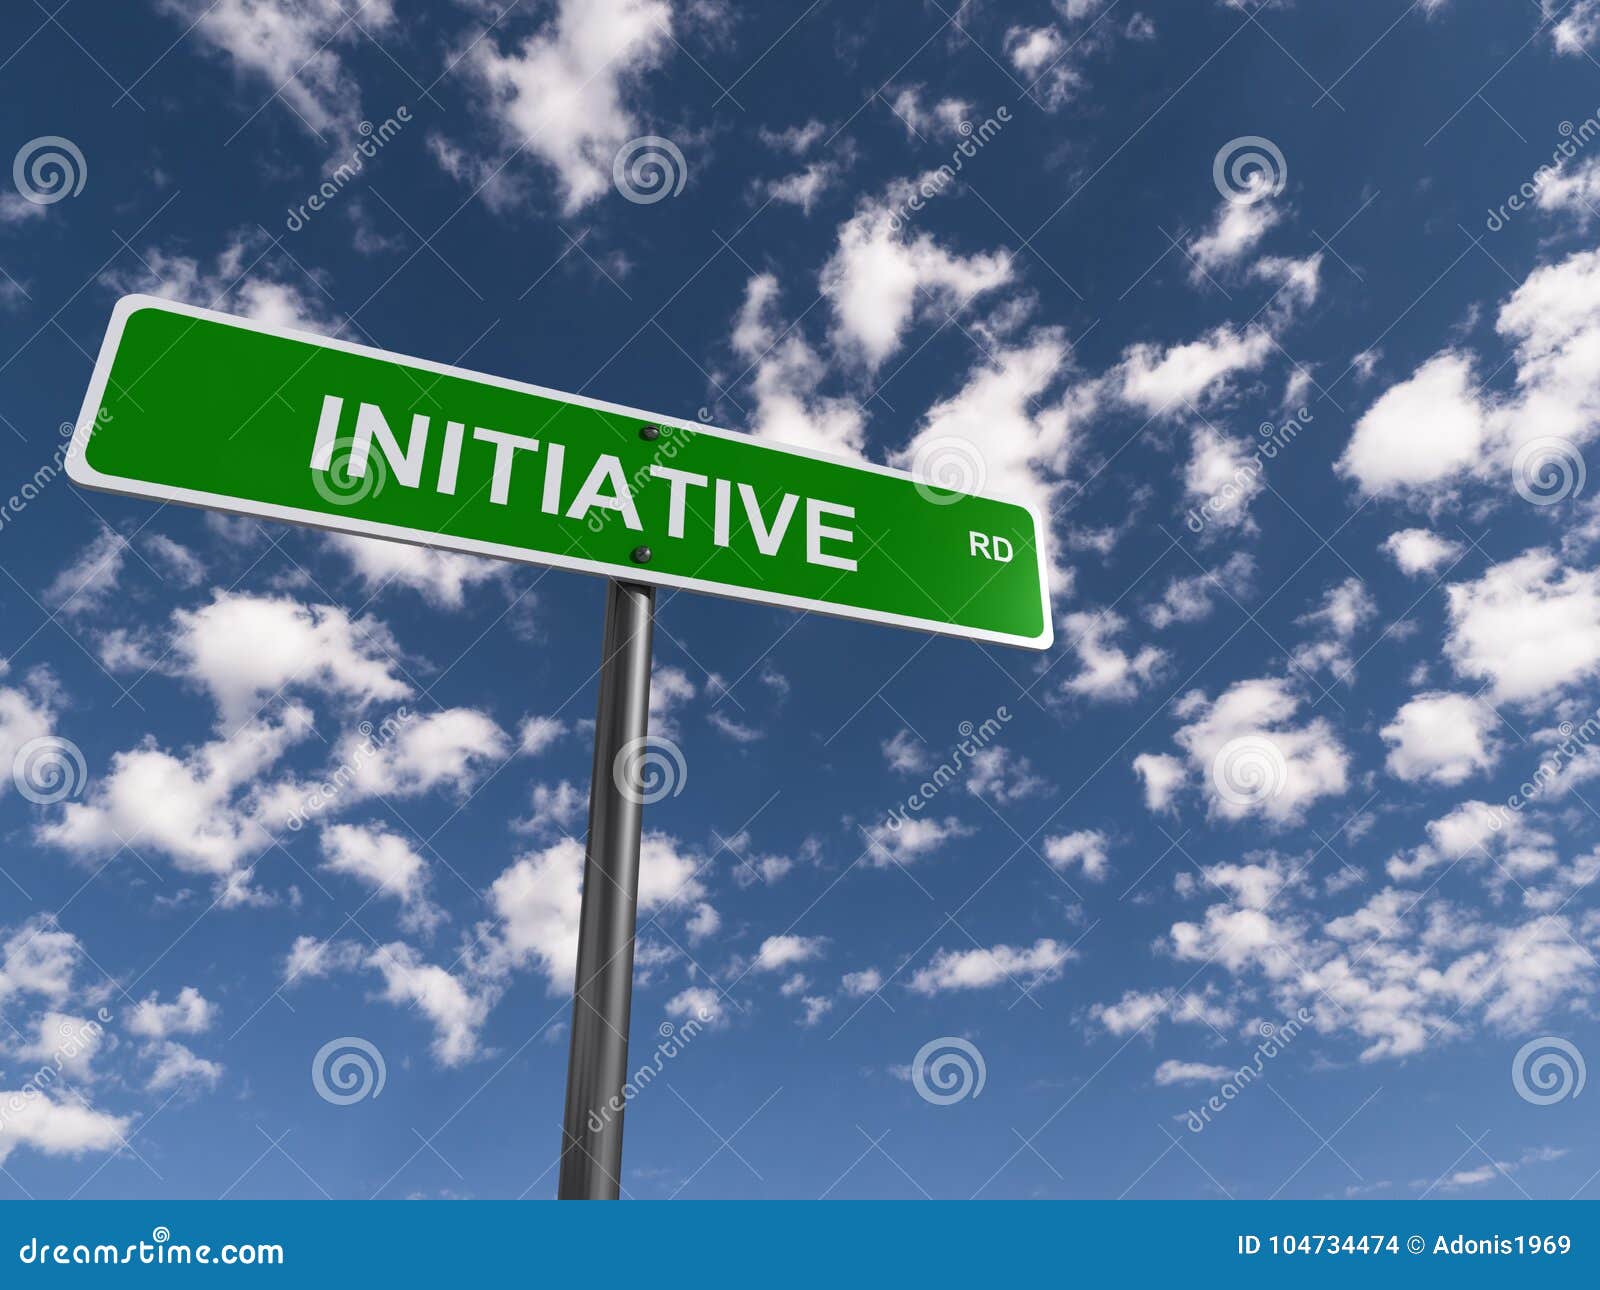 initiative road